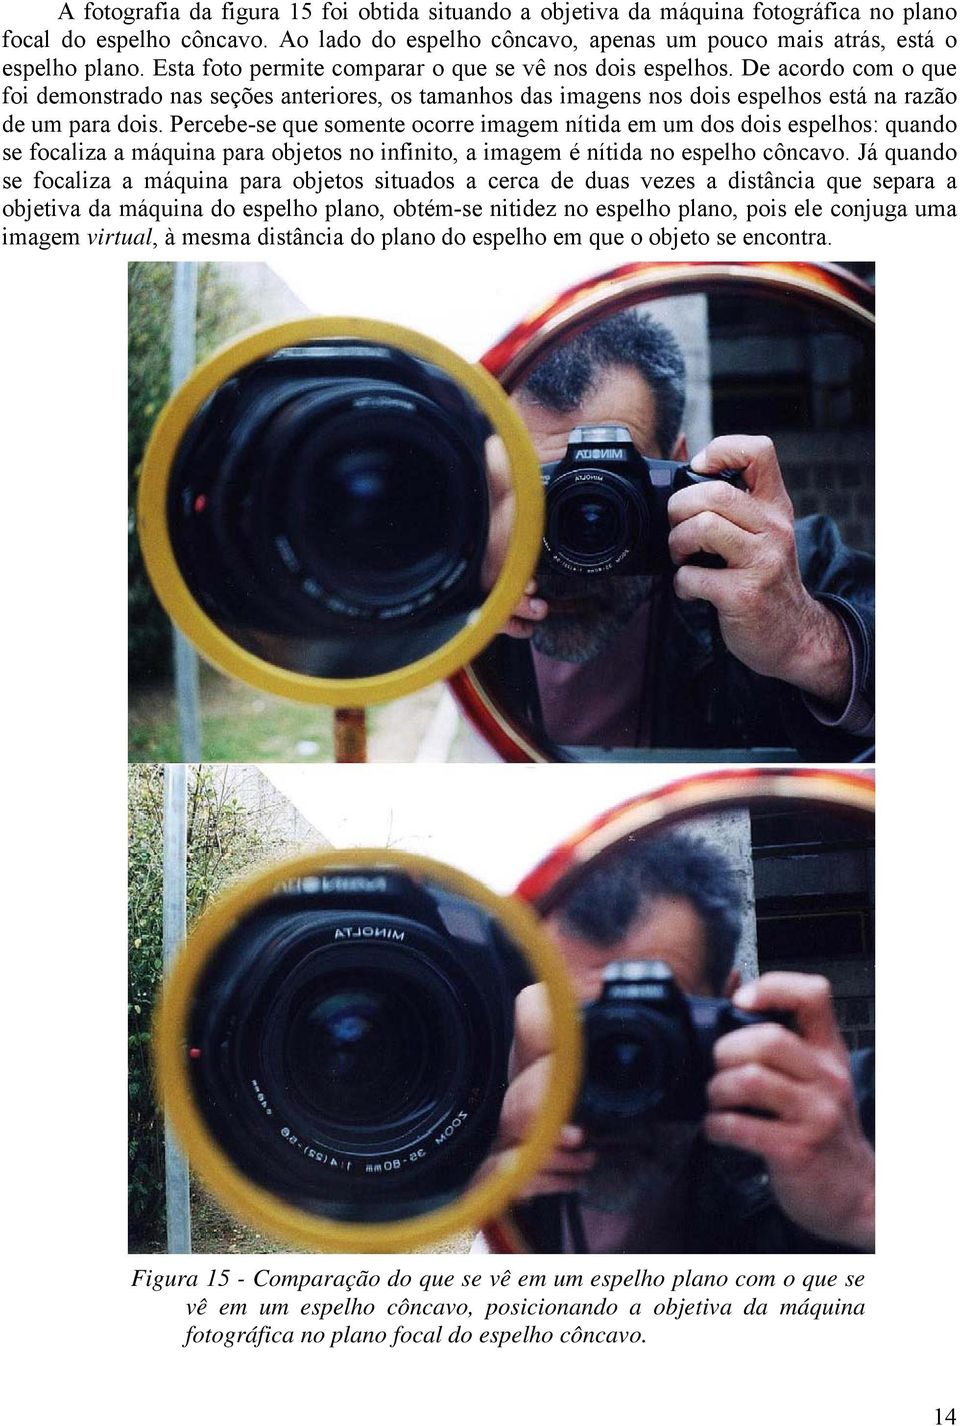 Percebe-se que smente crre imagem nítida em um ds dis espelhs: quand se fcaliza a máquina para bjets n infinit, a imagem é nítida n espelh côncav.